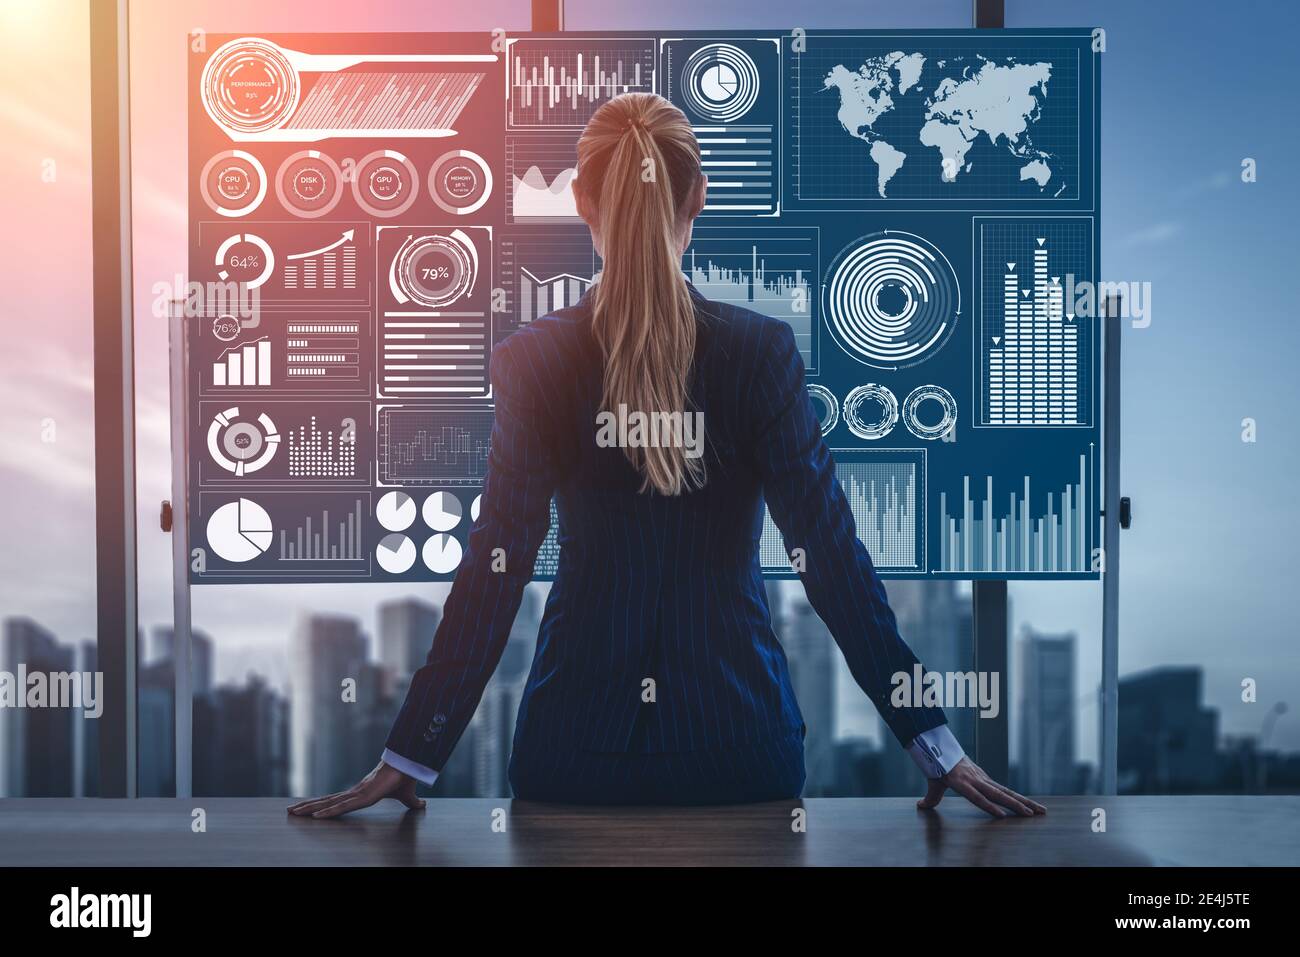 Big Data Technology for Business Finance Analytisches Konzept. Moderne grafische Schnittstelle zeigt massive Informationen von Geschäftsverkauf Bericht, Gewinn-Diagramm Stockfoto